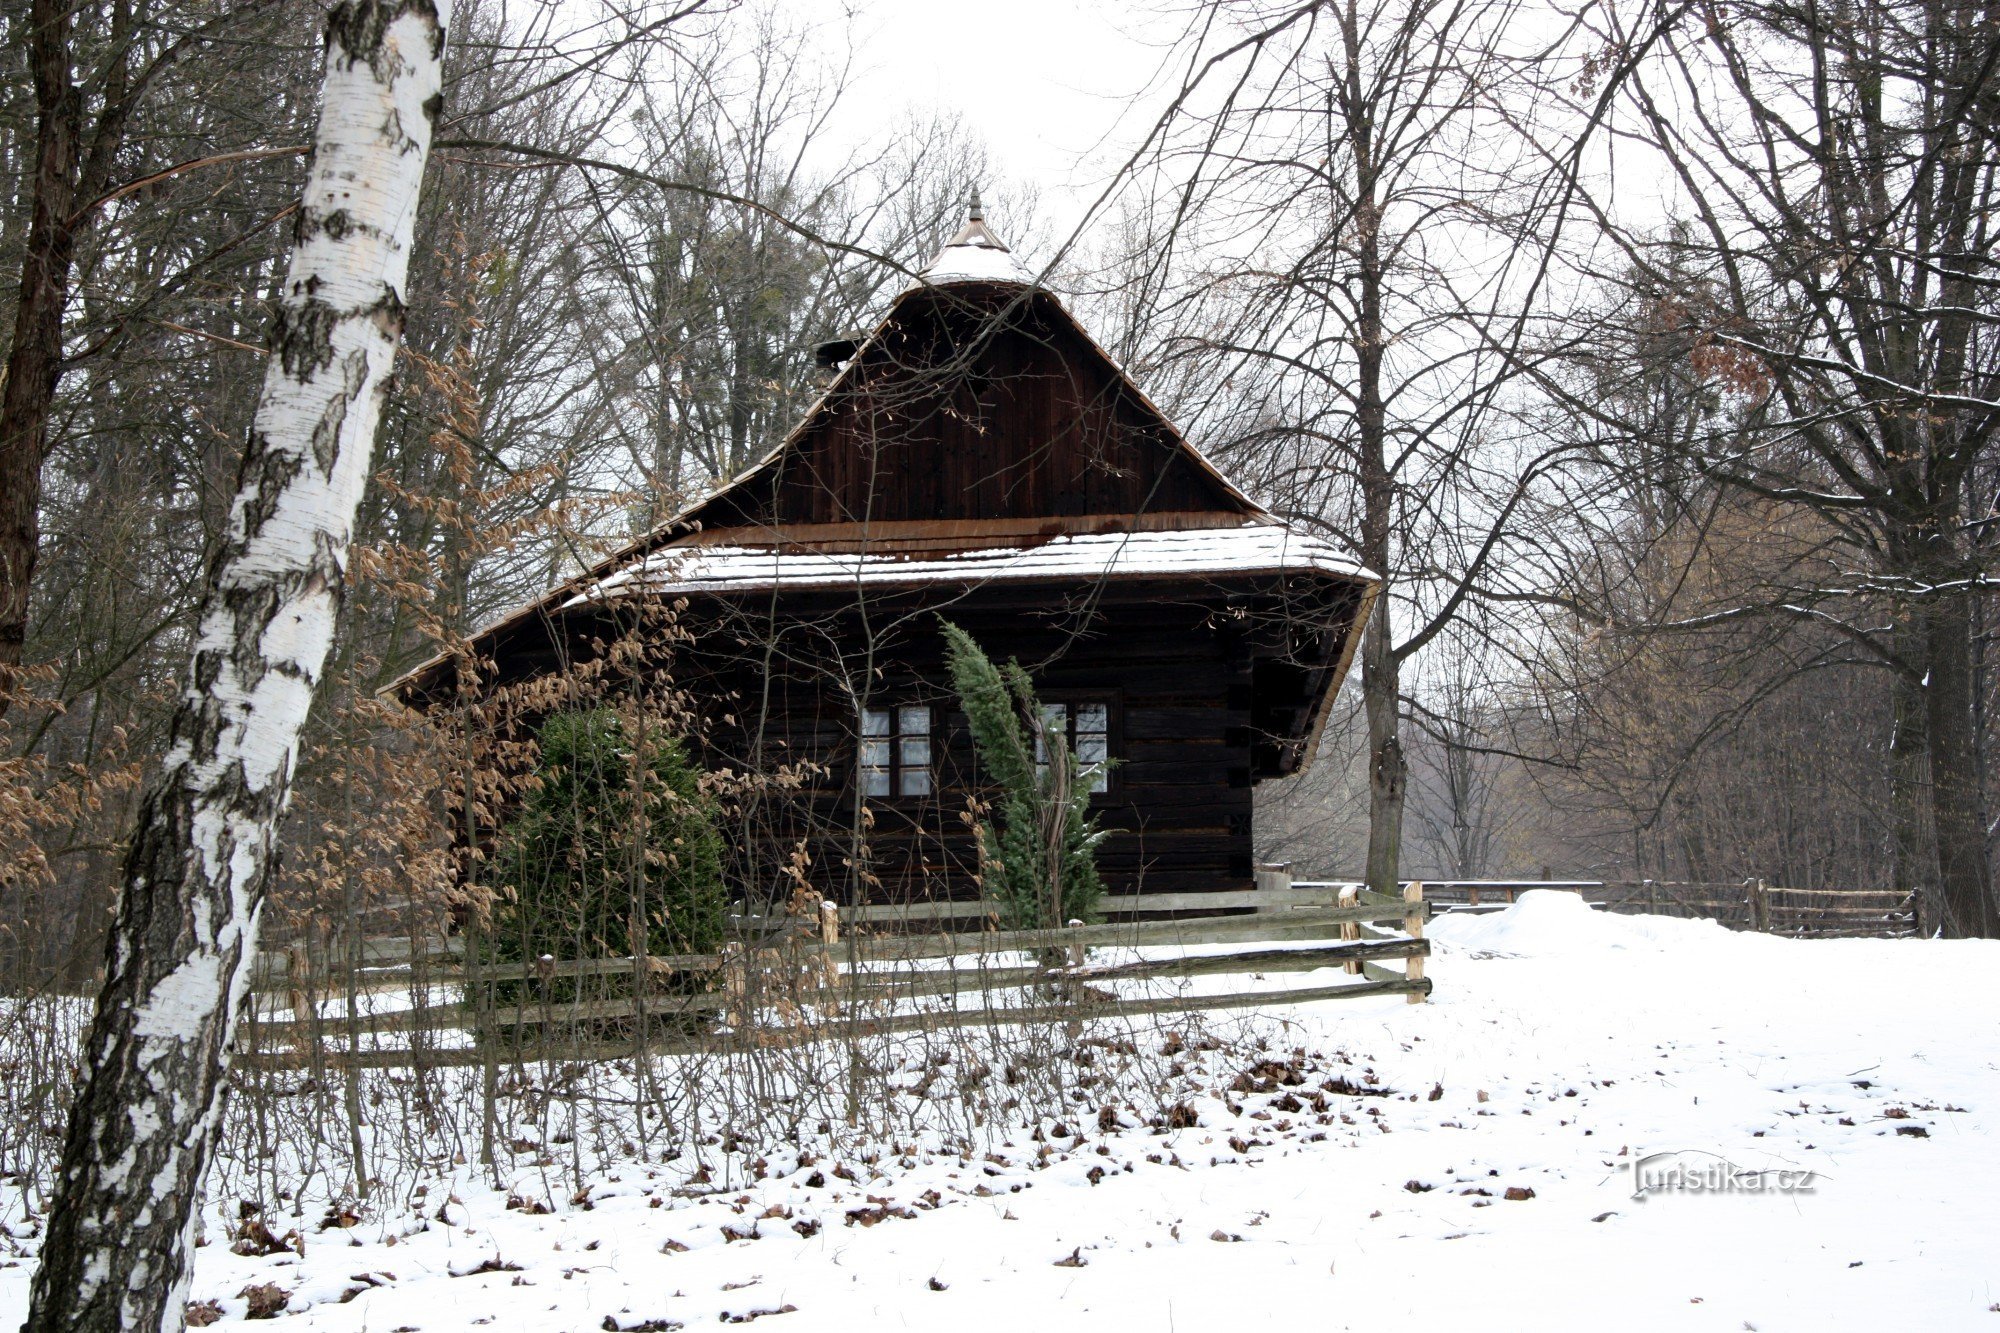 冬季步行穿过 Rožnov 的露天博物馆 + 从 Pusteven 到 Rodhošť